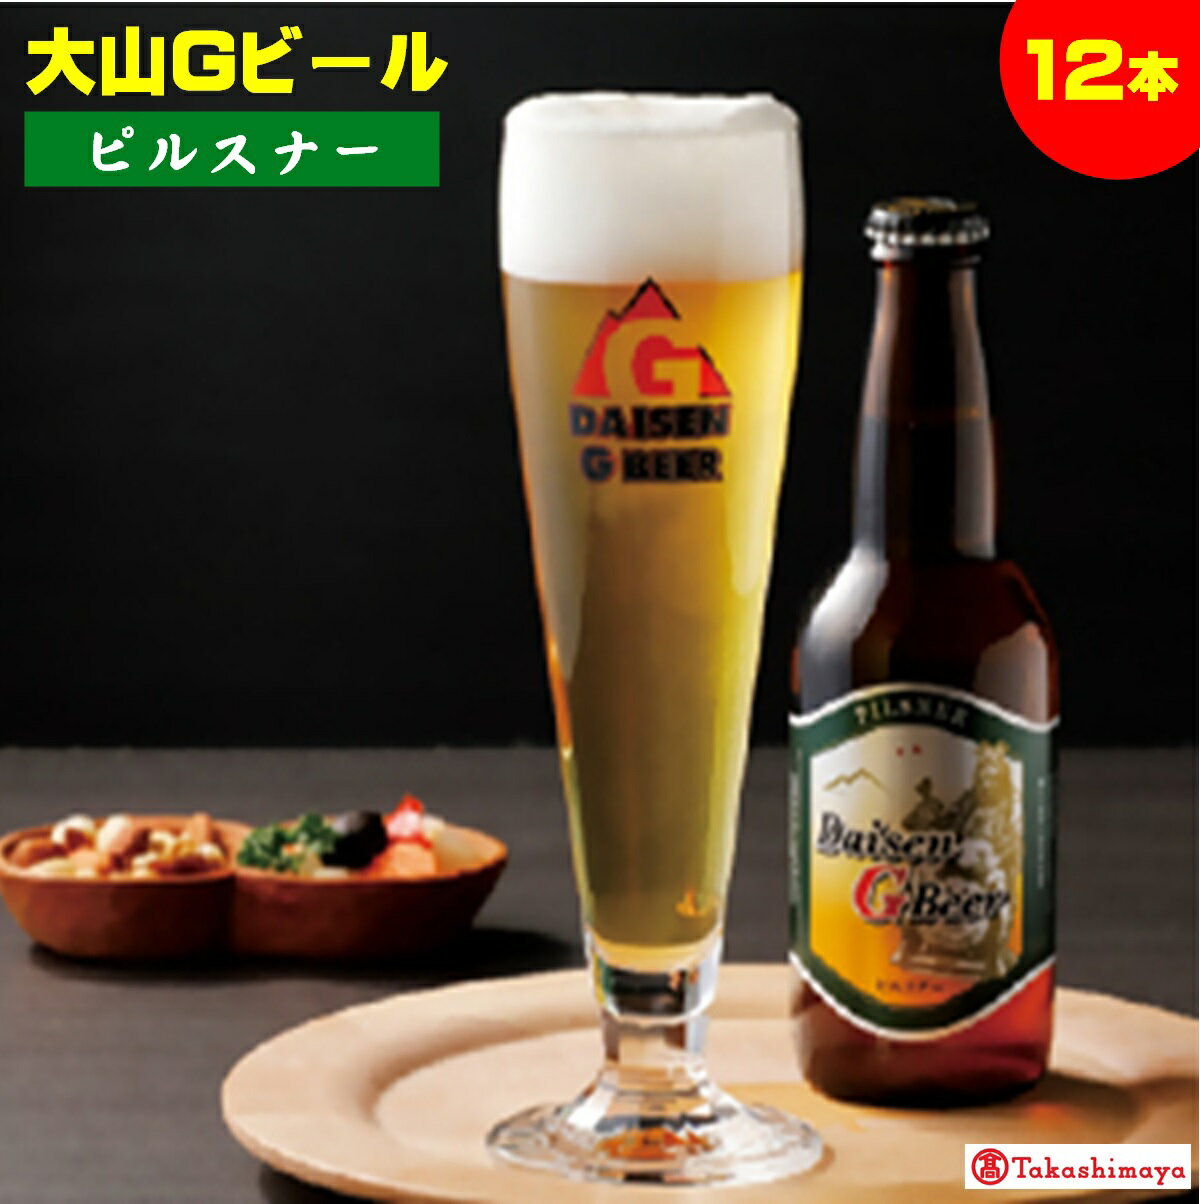 【ふるさと納税】 大山Gビール「ピルスナー」330ml×12